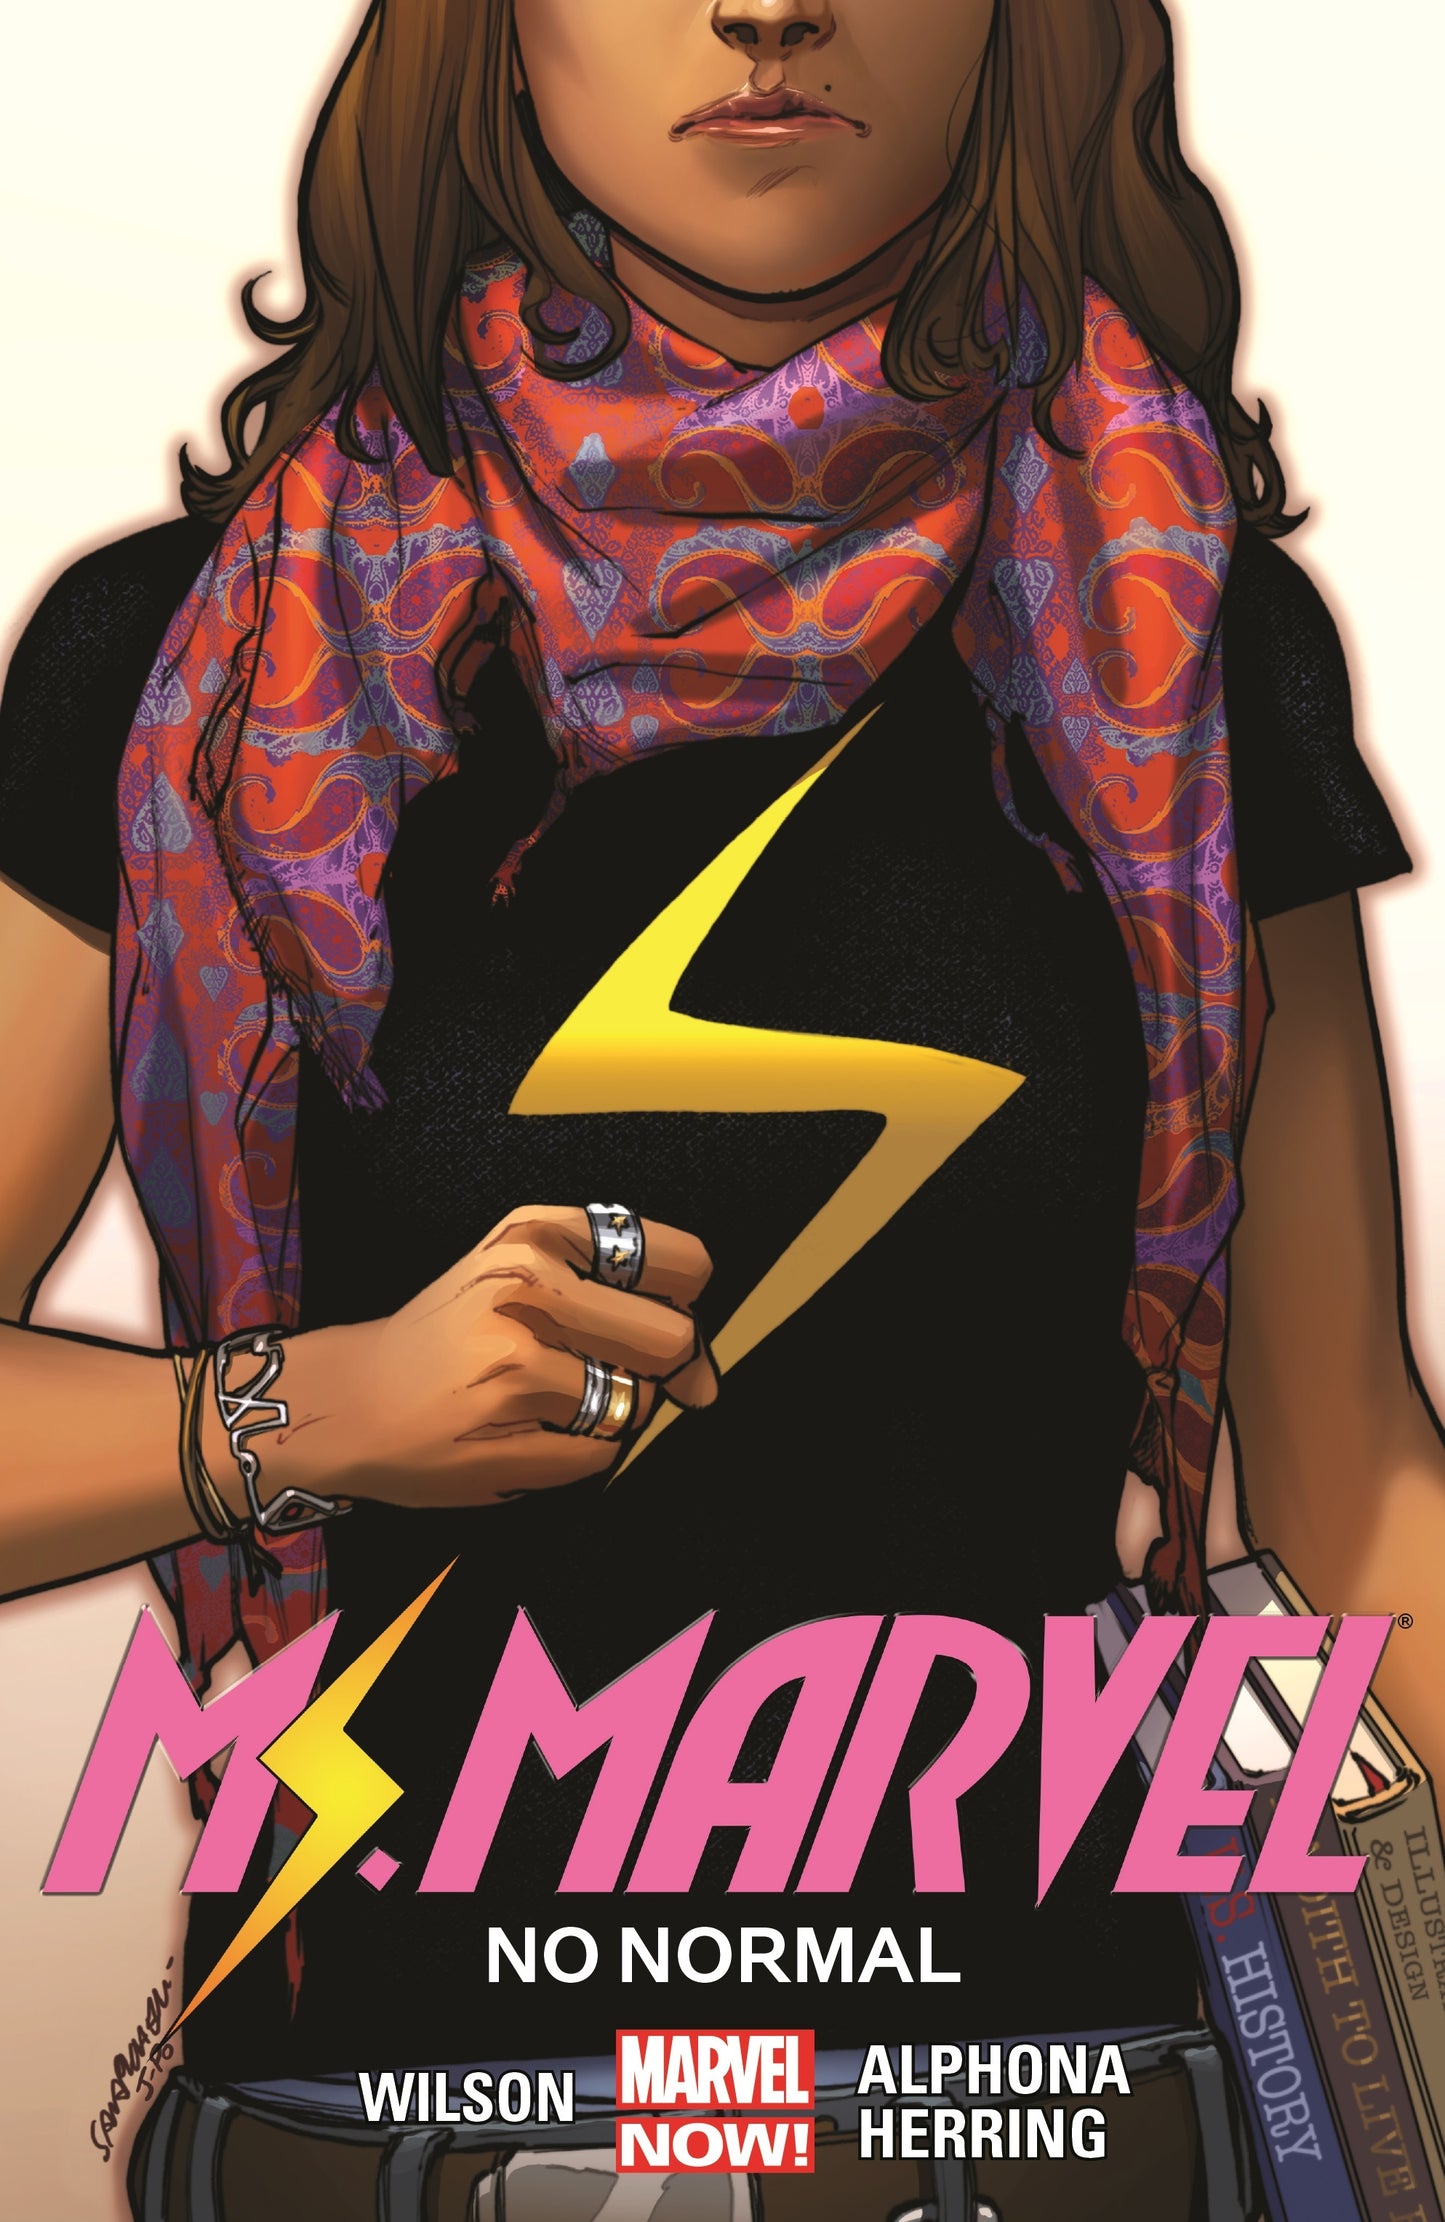 Ms. Marvel Vol 1 No Normal (TPB)